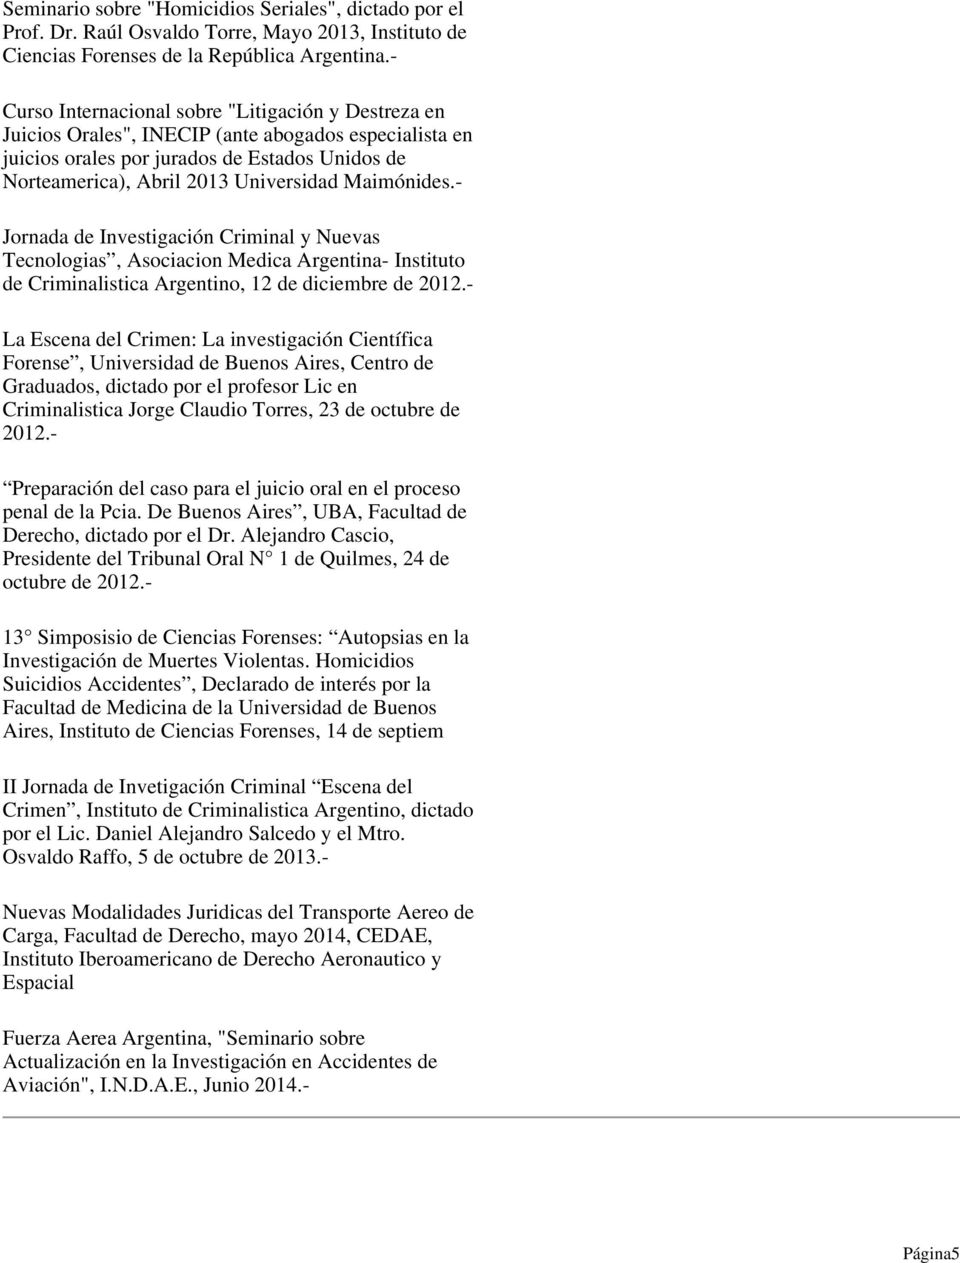 Maimónides.- Jornada de Investigación Criminal y Nuevas Tecnologias, Asociacion Medica Argentina- Instituto de Criminalistica Argentino, 12 de diciembre de 2012.